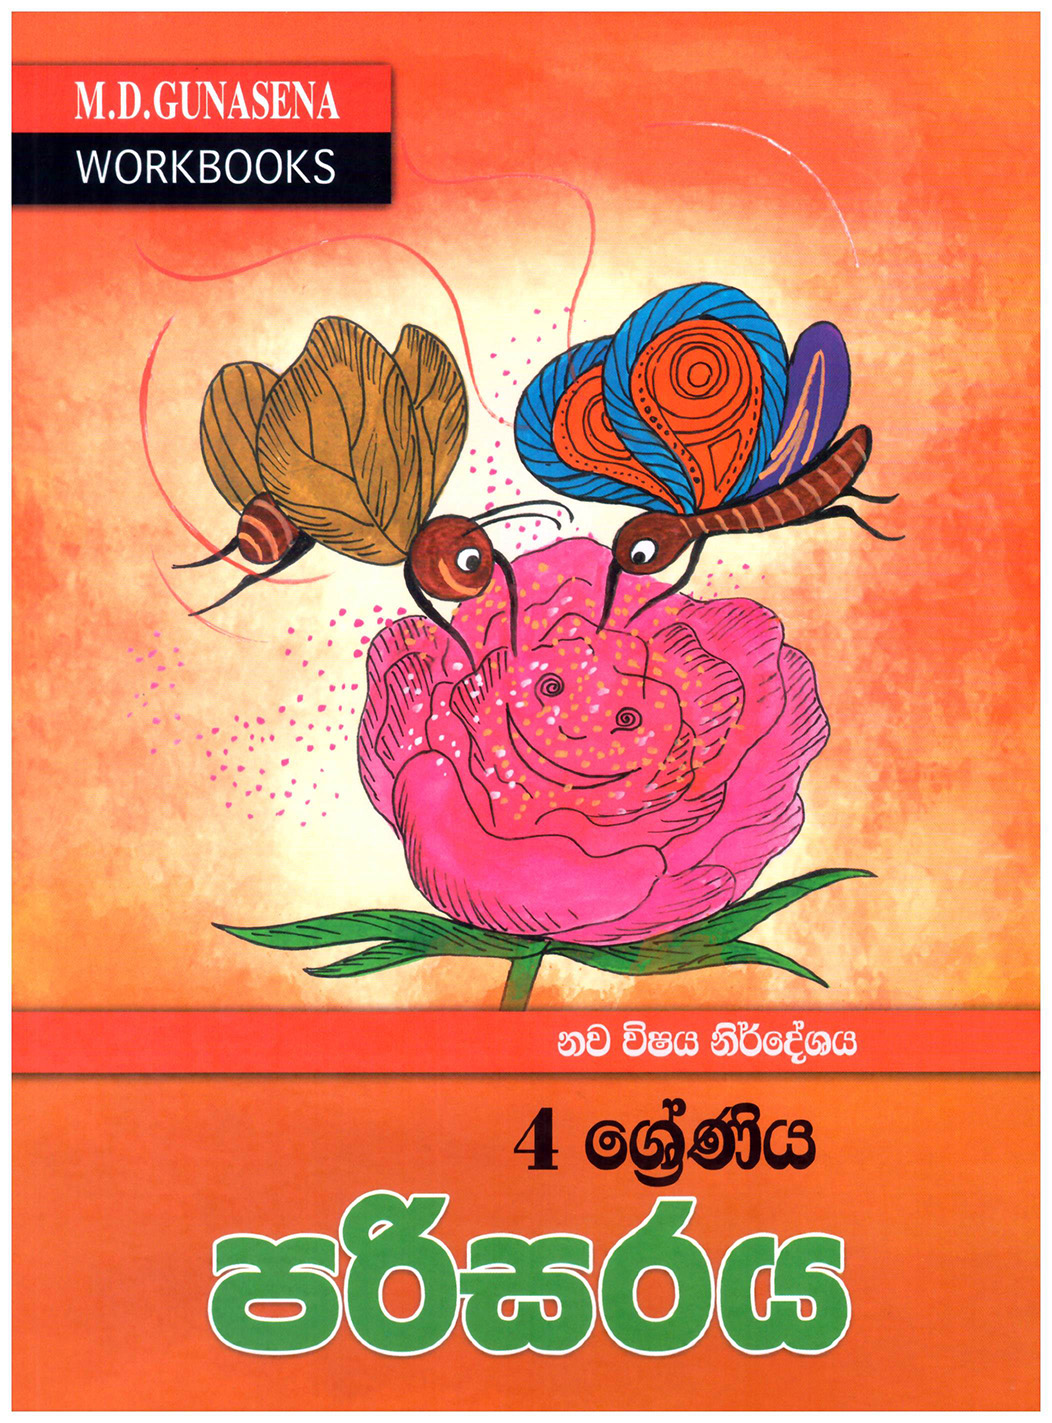 M.D. Gunasena Workbooks : Parisaraya 04 Shreniya